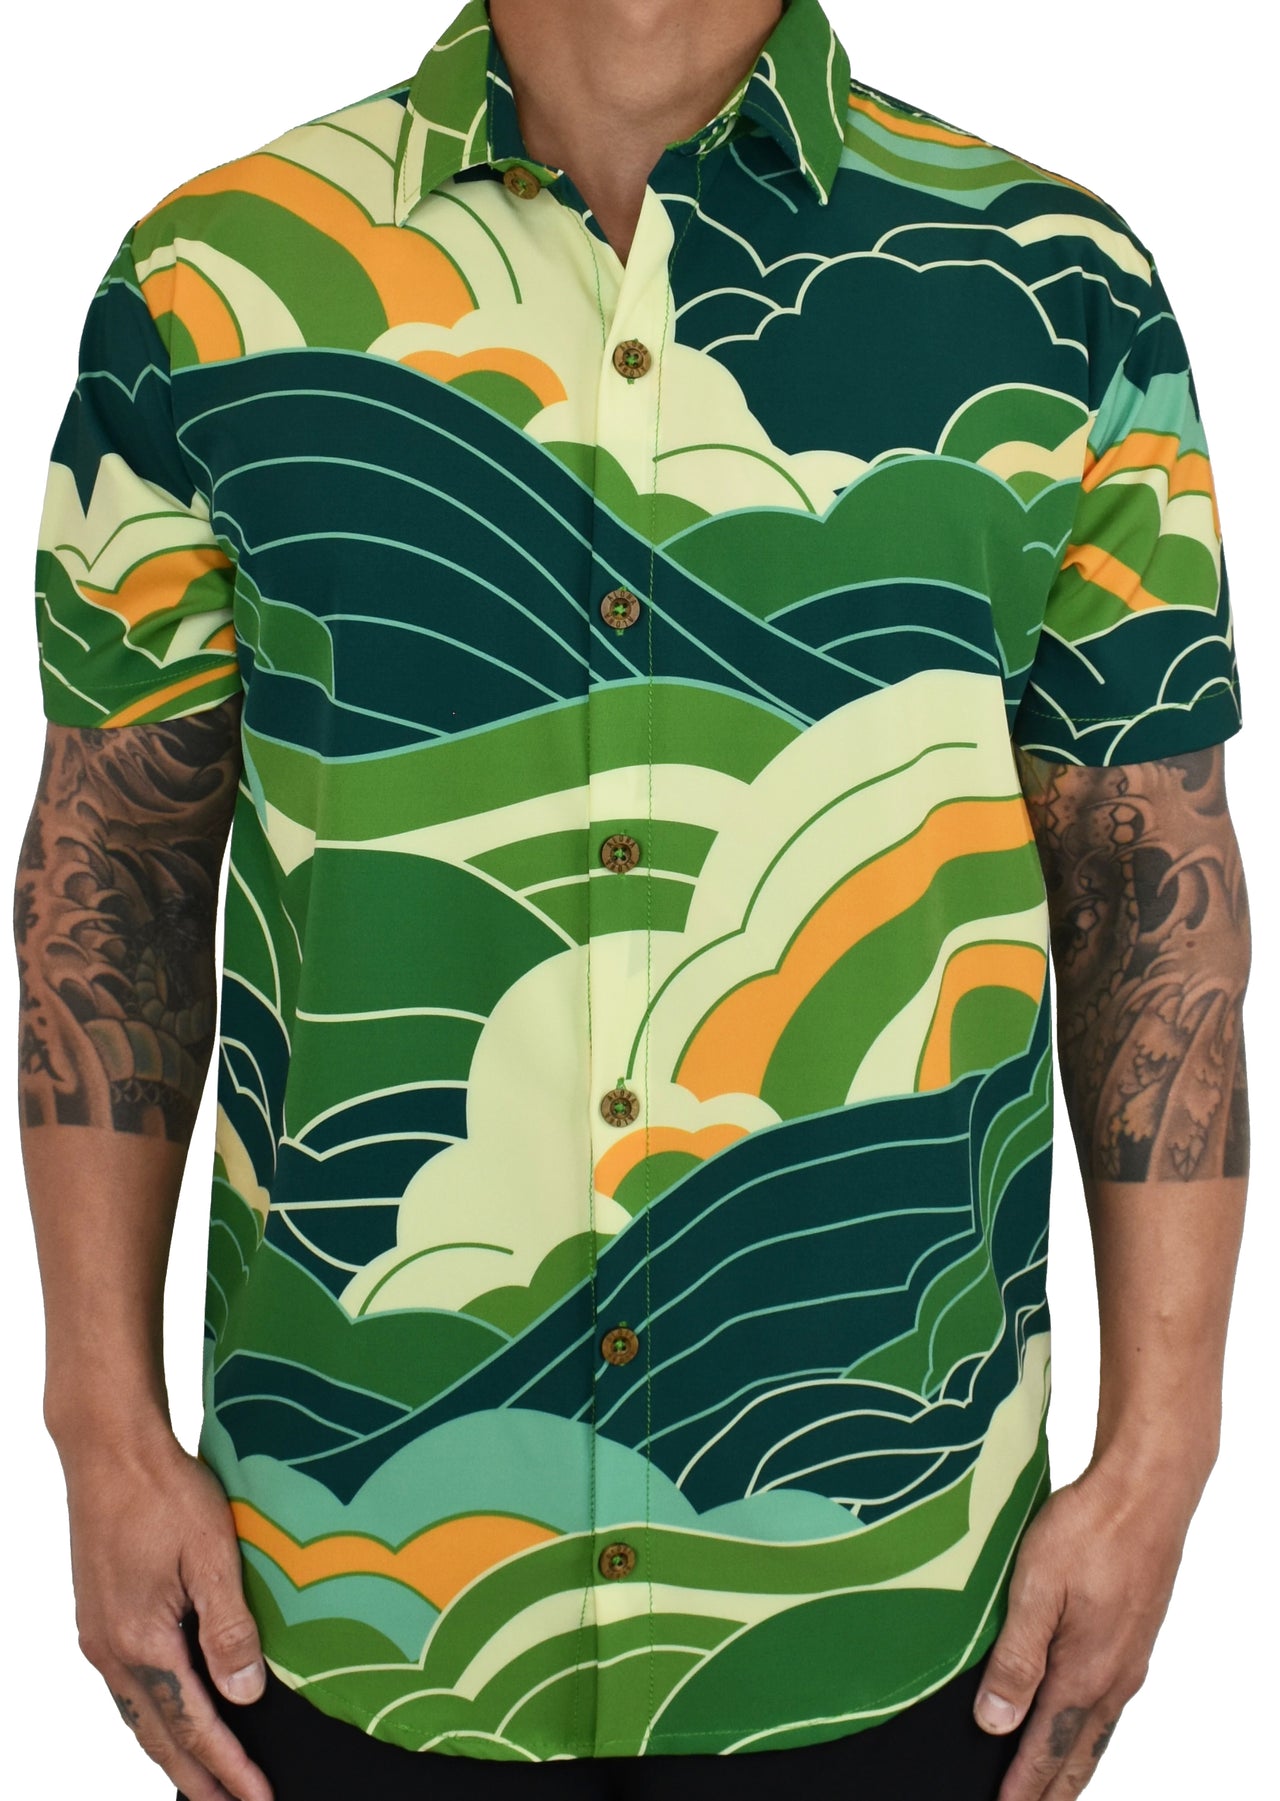 'SunKiss Kiwi' ULTRA Aloha (Hawaiian) Shirt